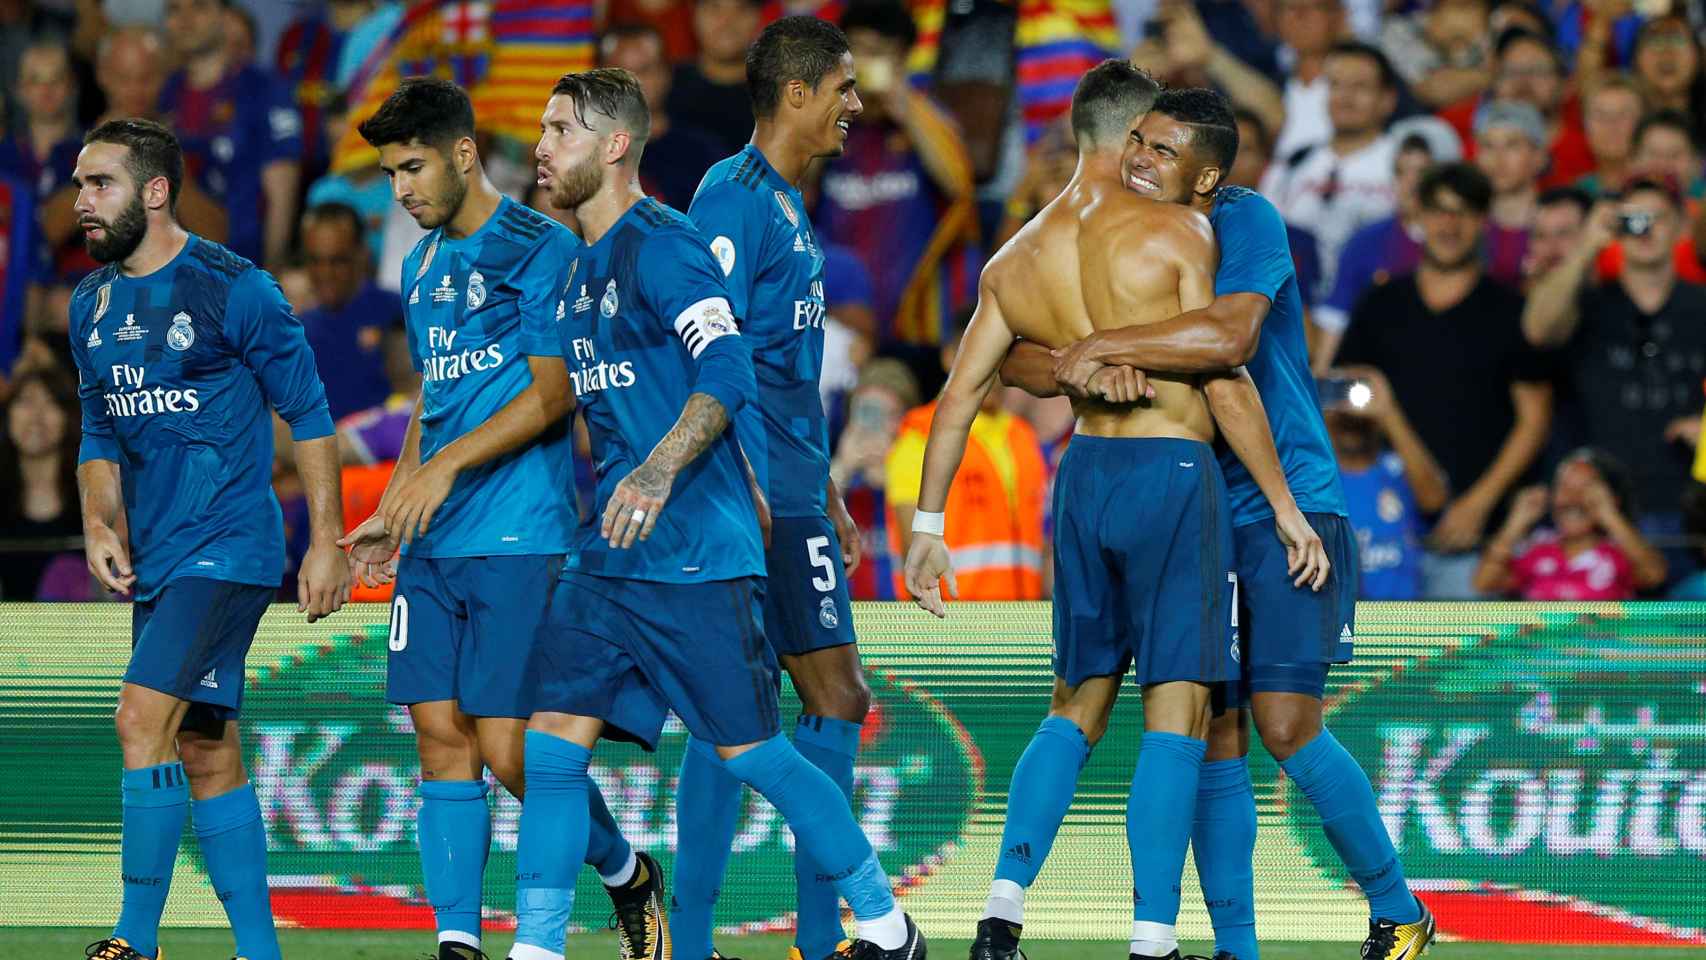 El Real Madrid - Barcelona de la Supercopa, en imágenes